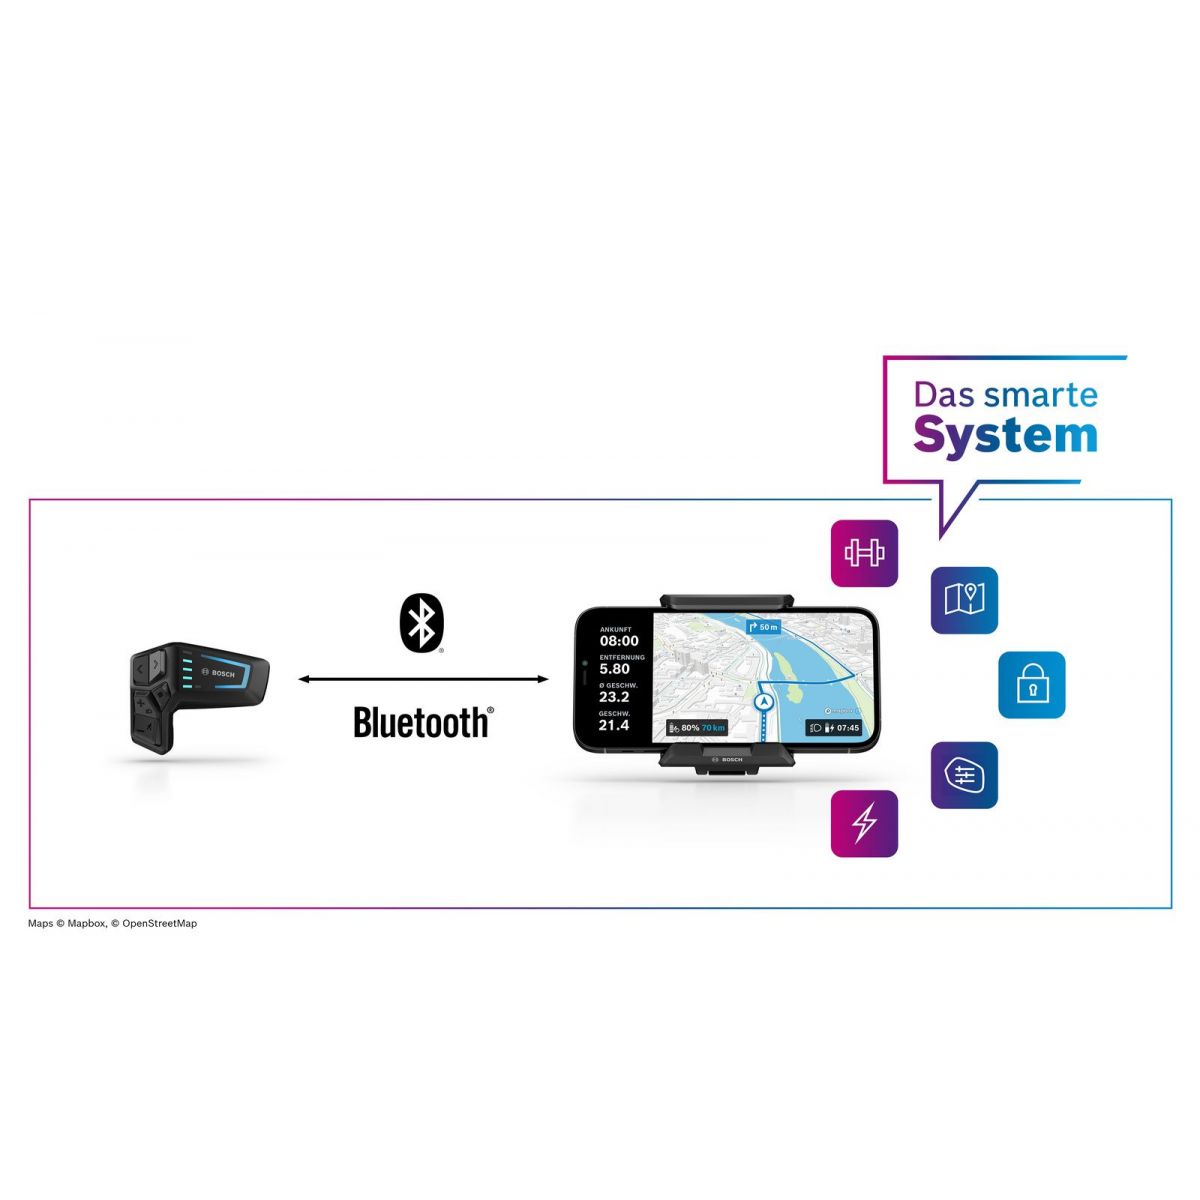 nuevo Smartphone grip de Bosch para teléfono móvil